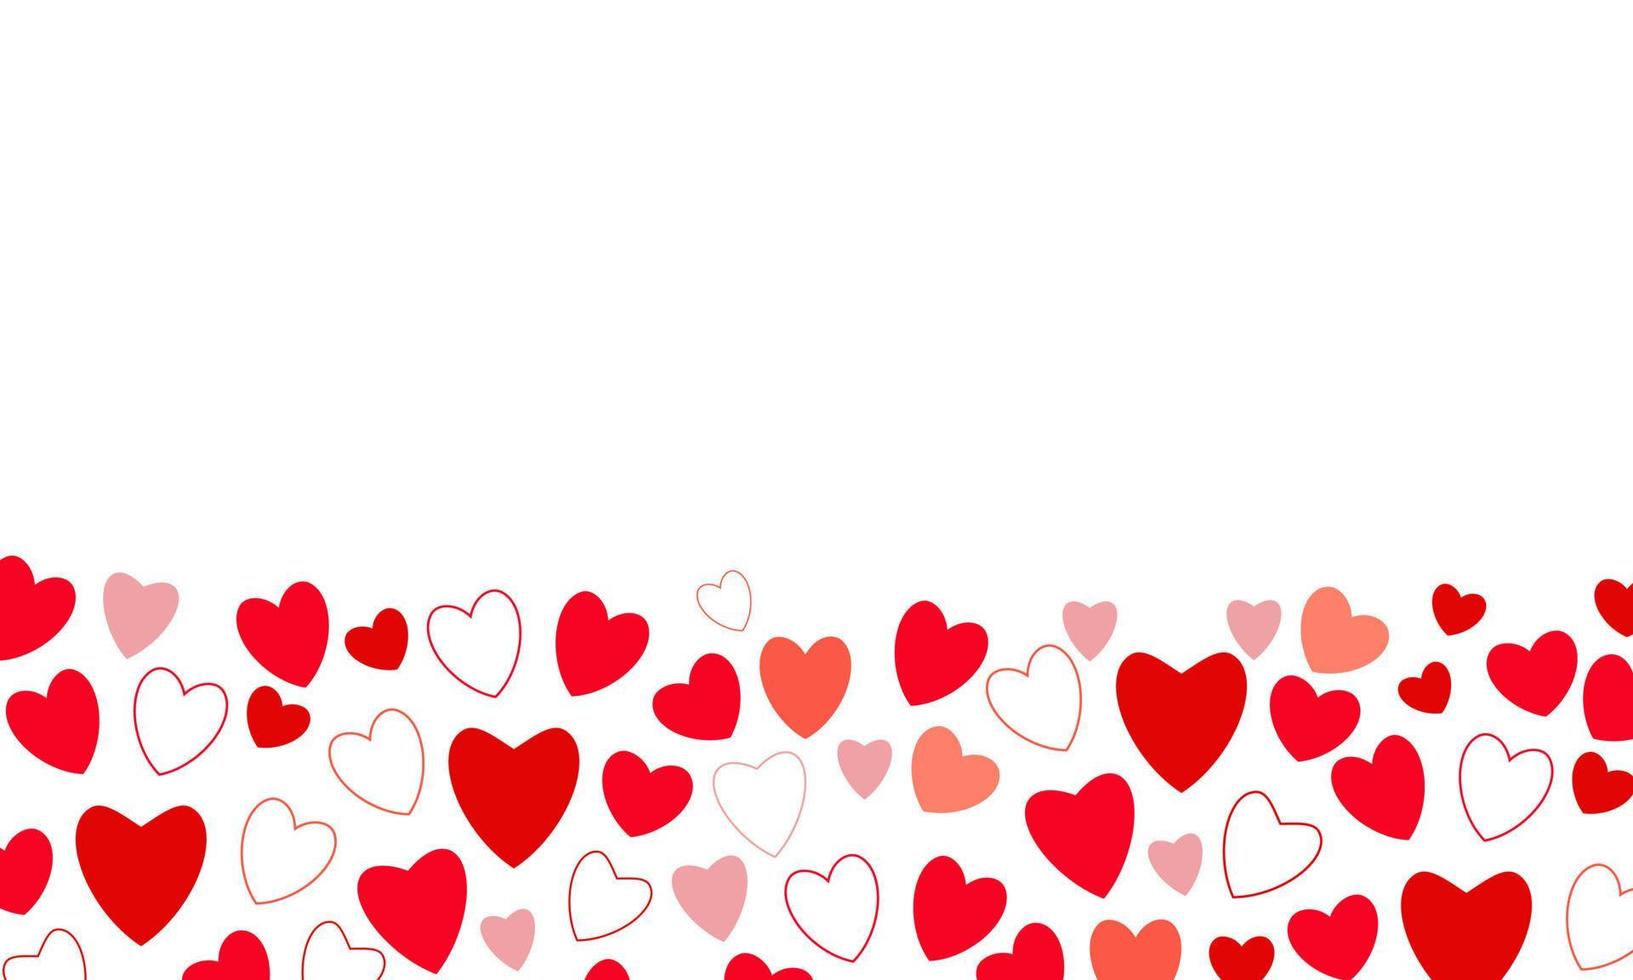 fundo do conceito de dia dos namorados com corações vermelhos e rosa. ilustração vetorial. banner de venda de amor bonito ou cartão vetor